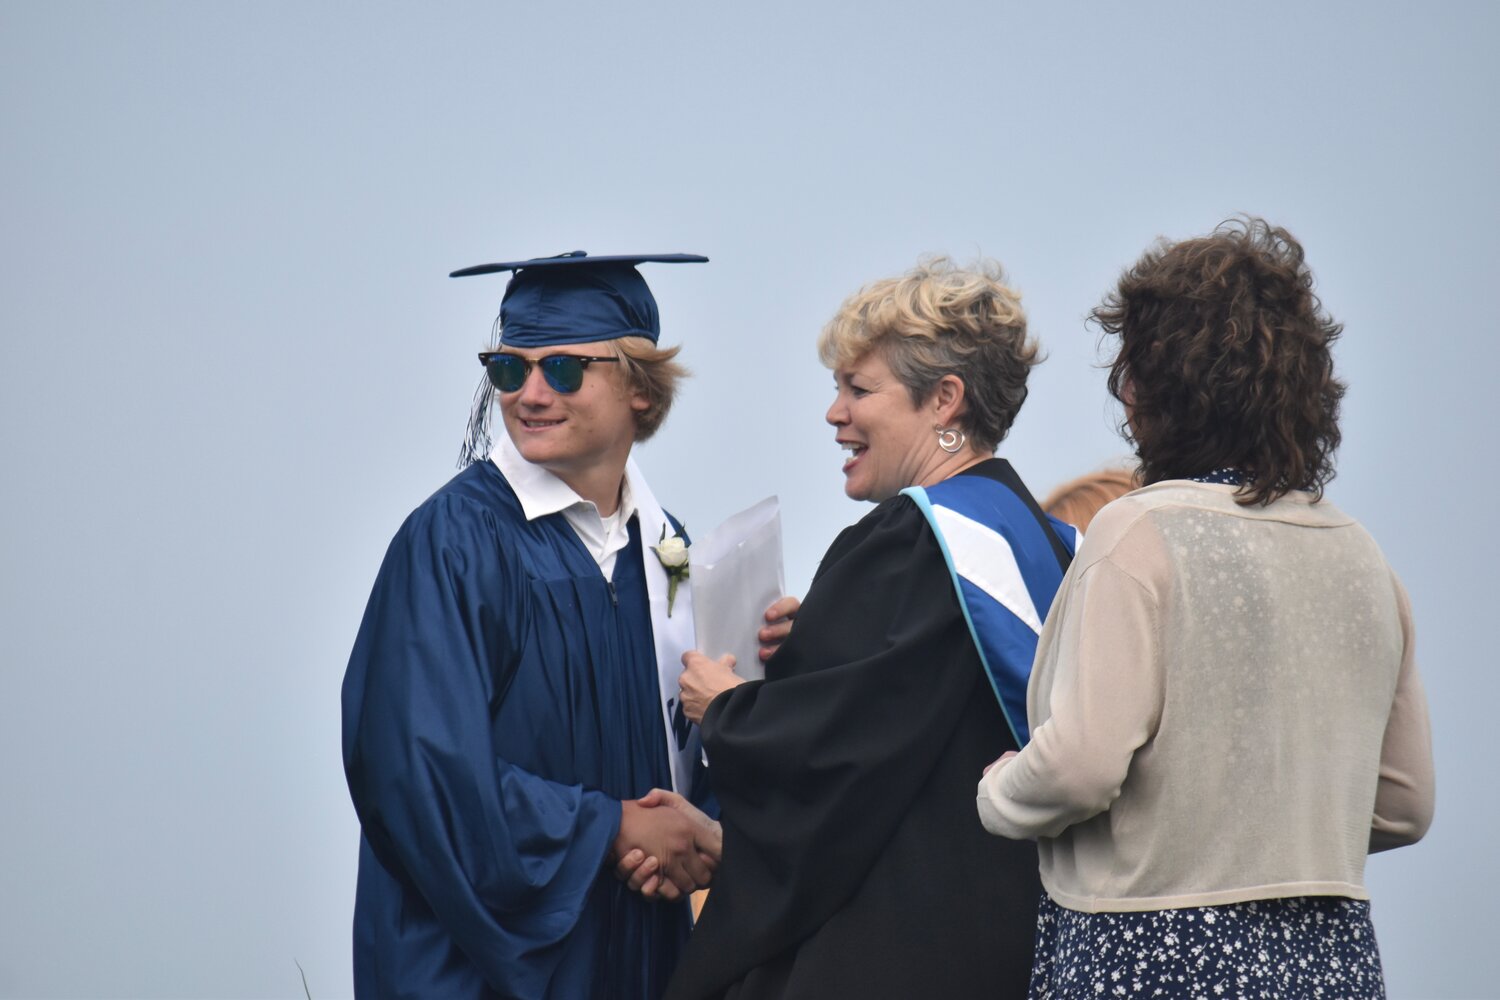 Owen Wilson receives his diploma.